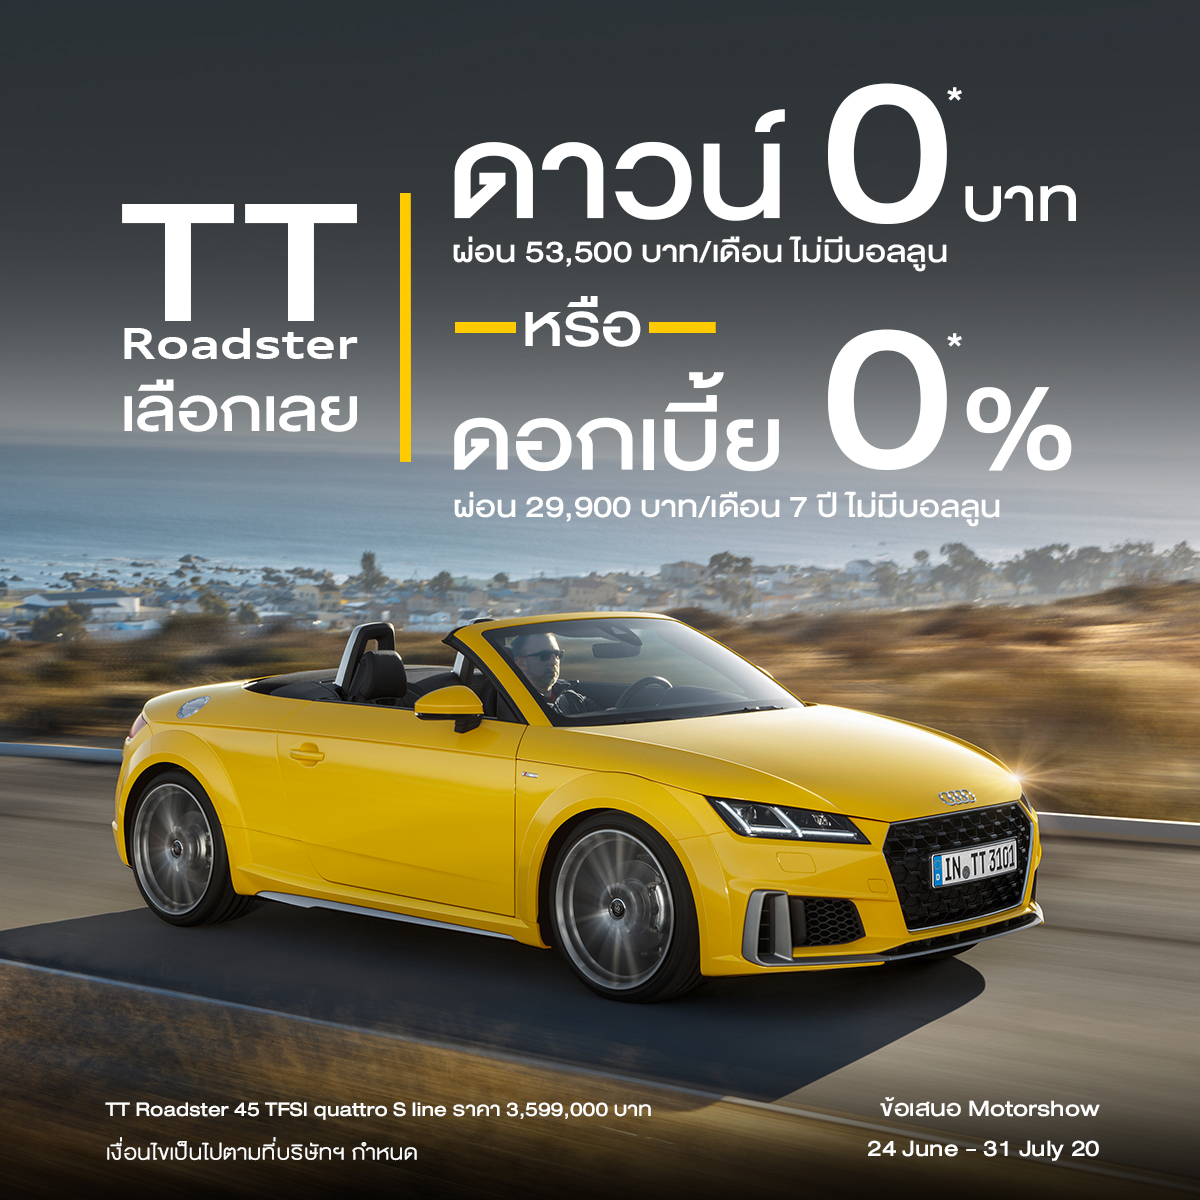 Audi ประเทศไทย ประกาศแคมเปญ “มอเตอร์โชว์ 2020”  ดาวน์ 0 บาท เริ่มแล้ววันนี้!